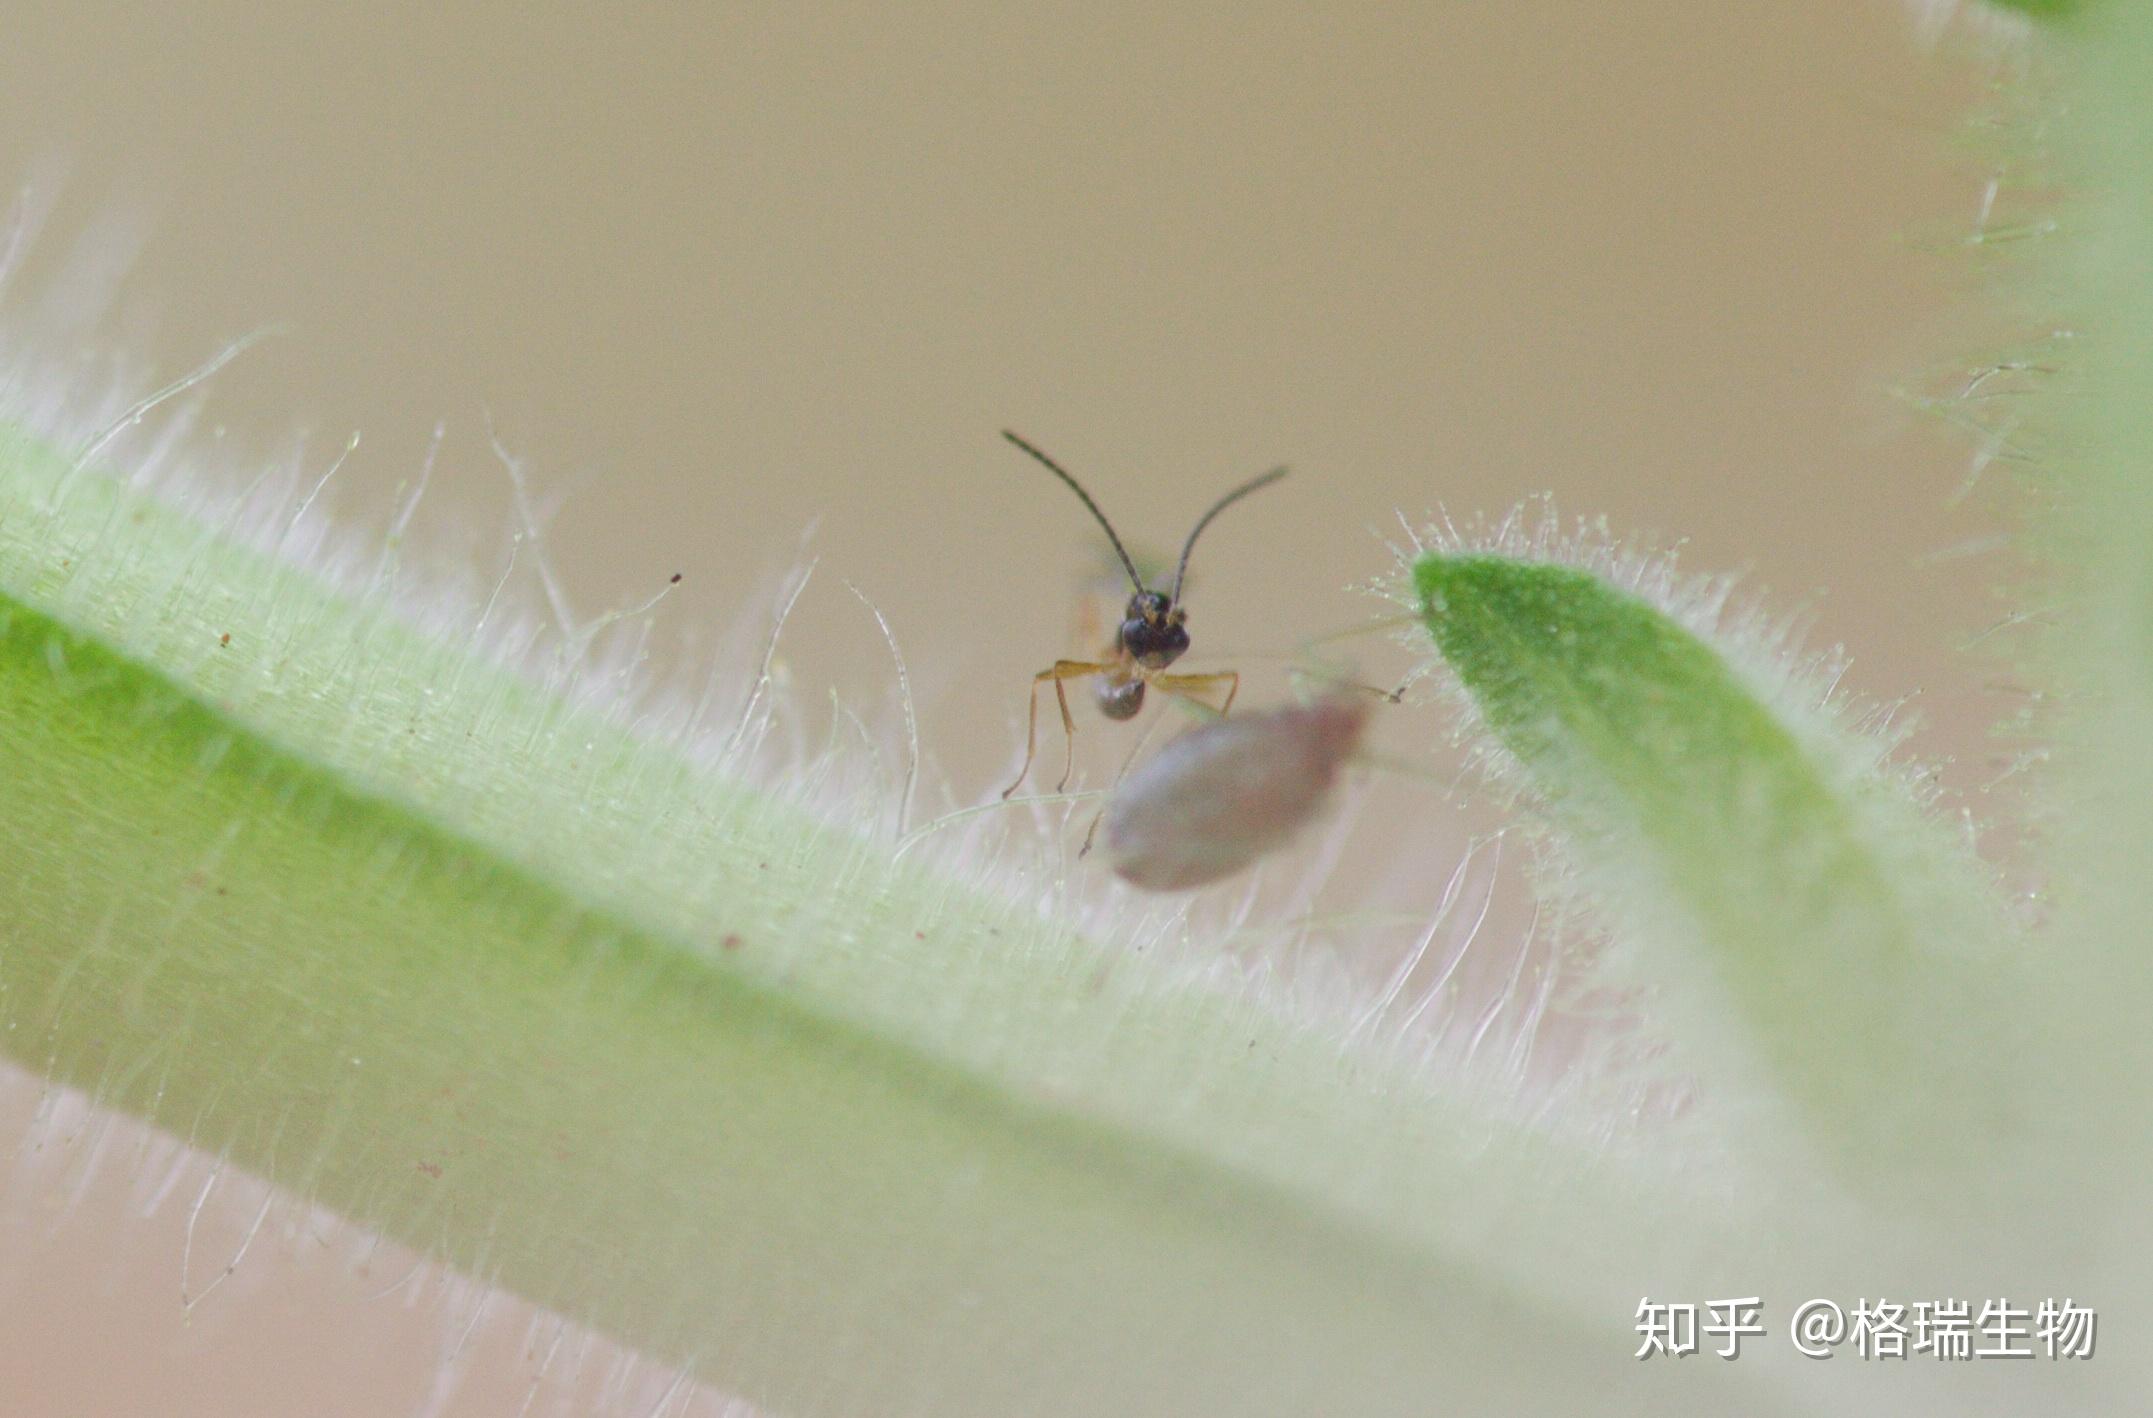 蚜茧蜂一般喜欢寄生低龄幼虫,但也会寄生大蚜和成蚜